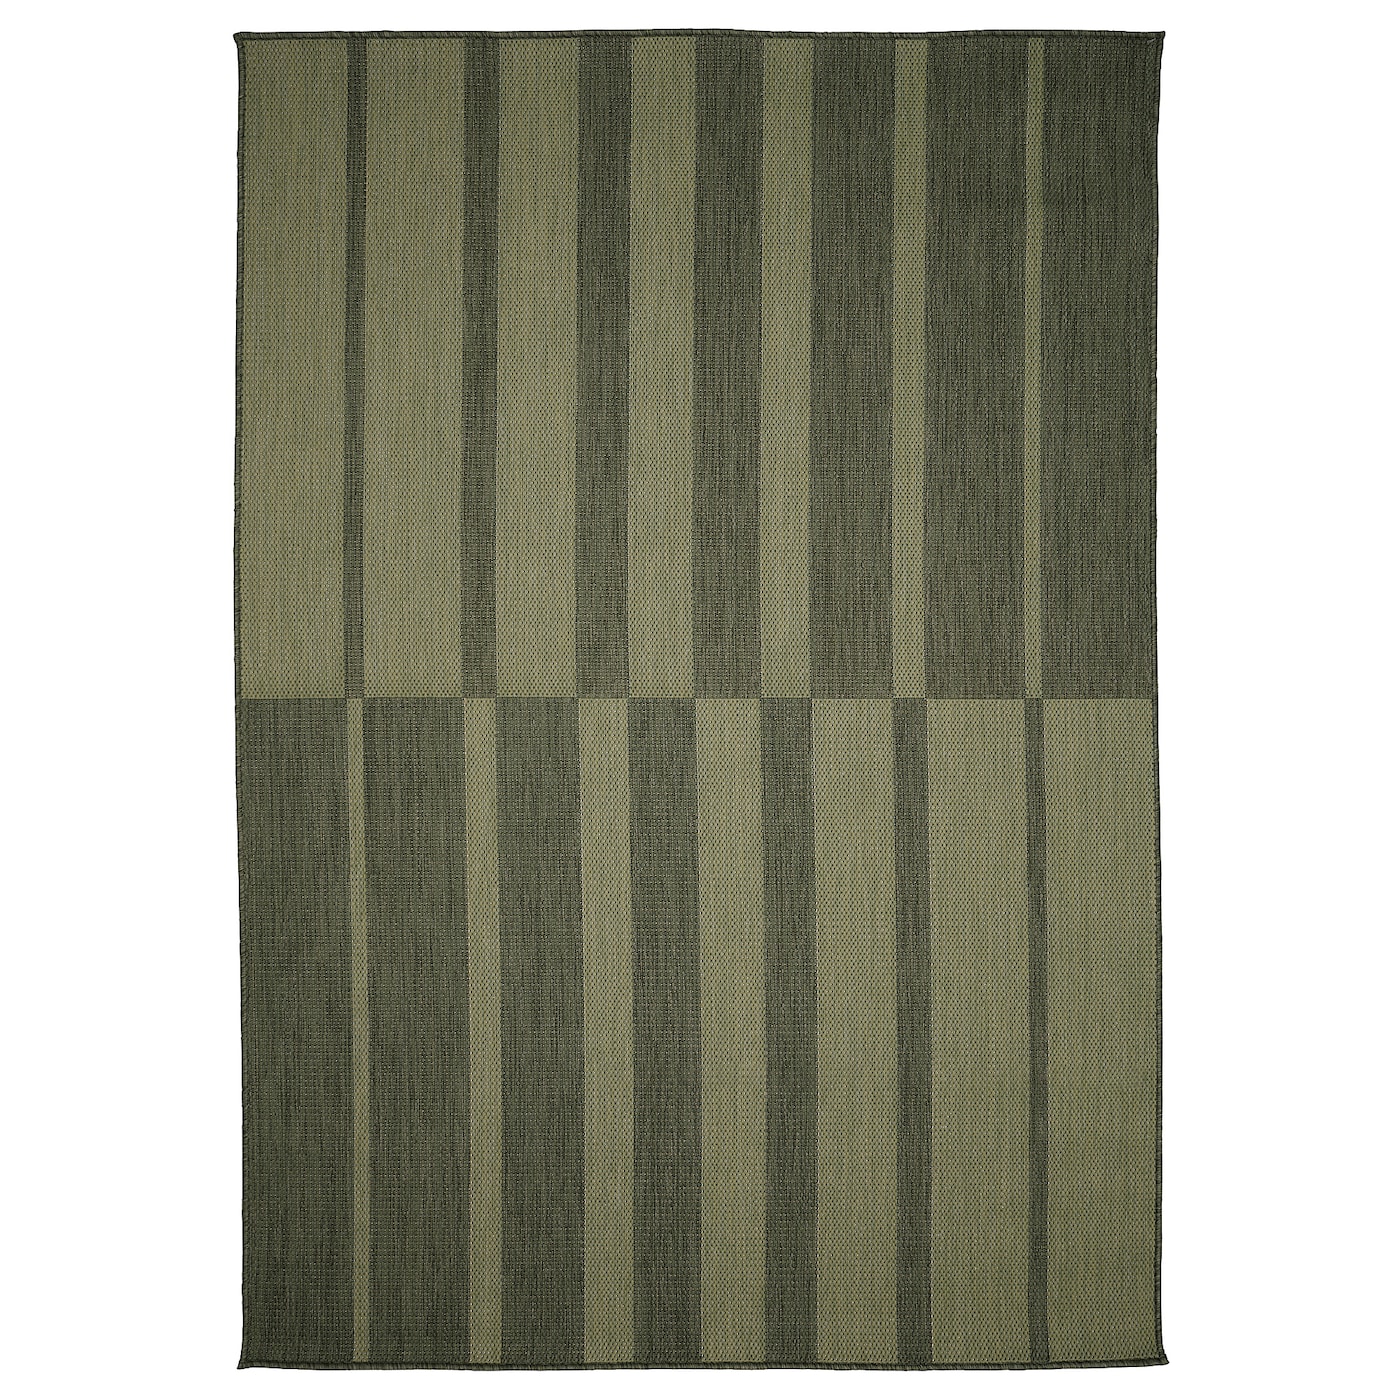 Текстильный ковер для дома и улицы - IKEA KANTSTOLPE/КАНТСТОЛП ИКЕА, 195х133 см, зеленый